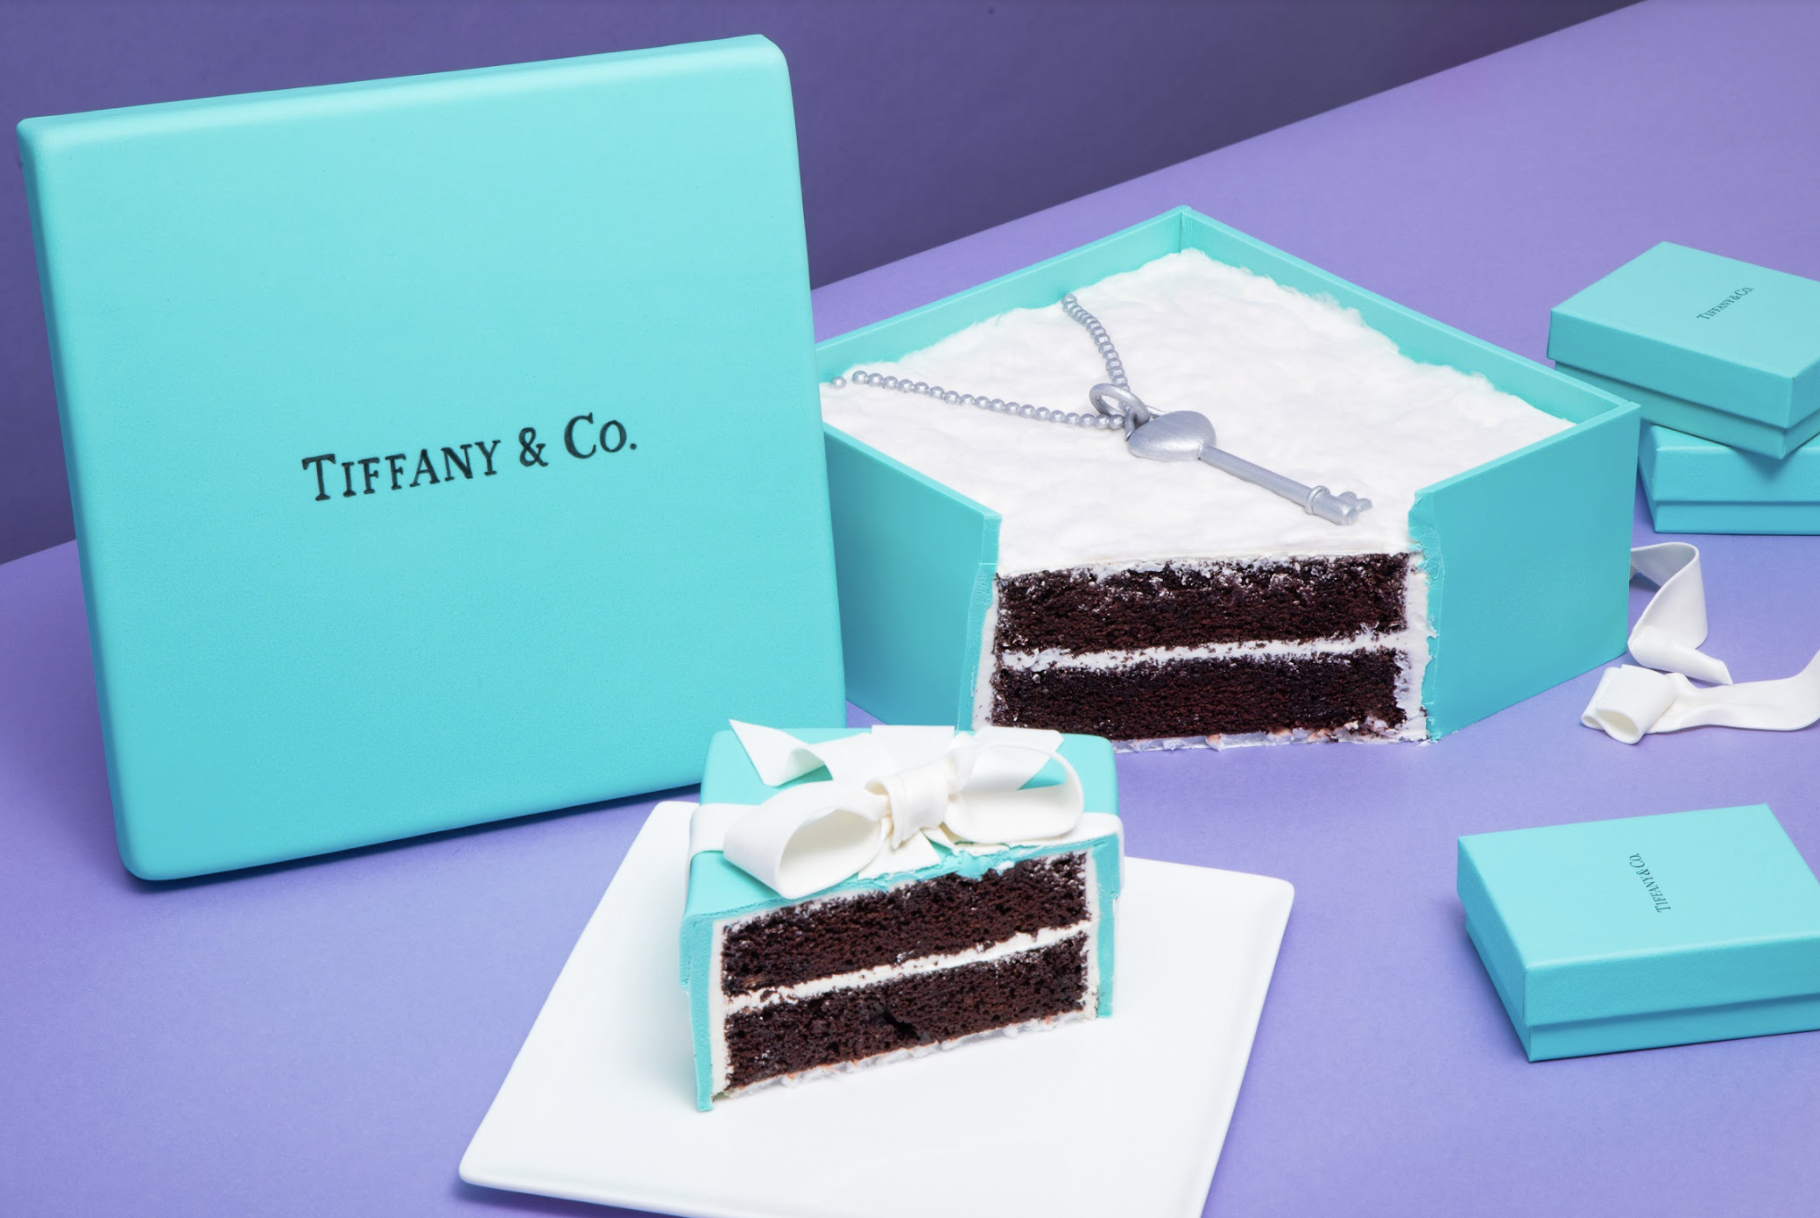 Tiffany & Co. Box Cake | Mouthful of Cakes